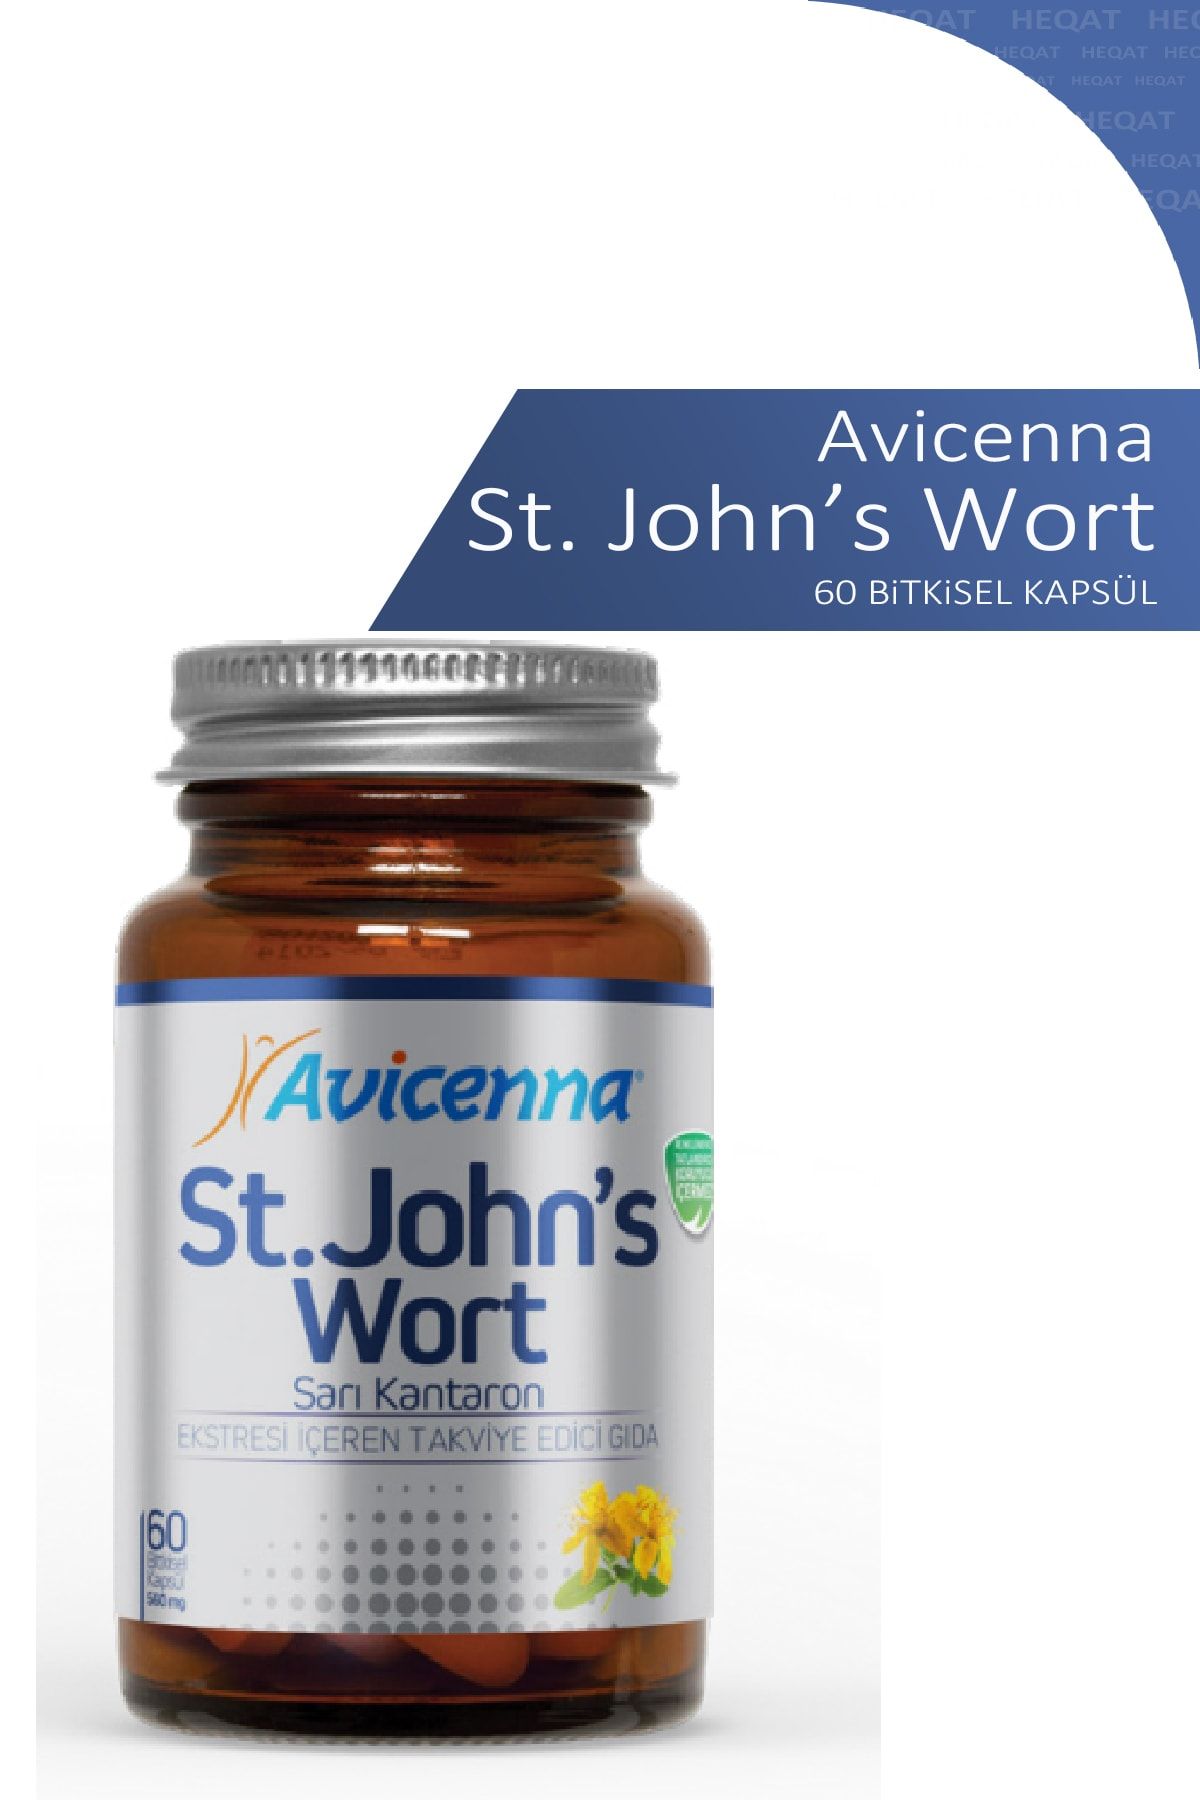 Avicenna St. John's Wort - Sarı Kantaron Içeren Gıda Takviyesi - 60 Bitkisel Kapsül- 8690088002601